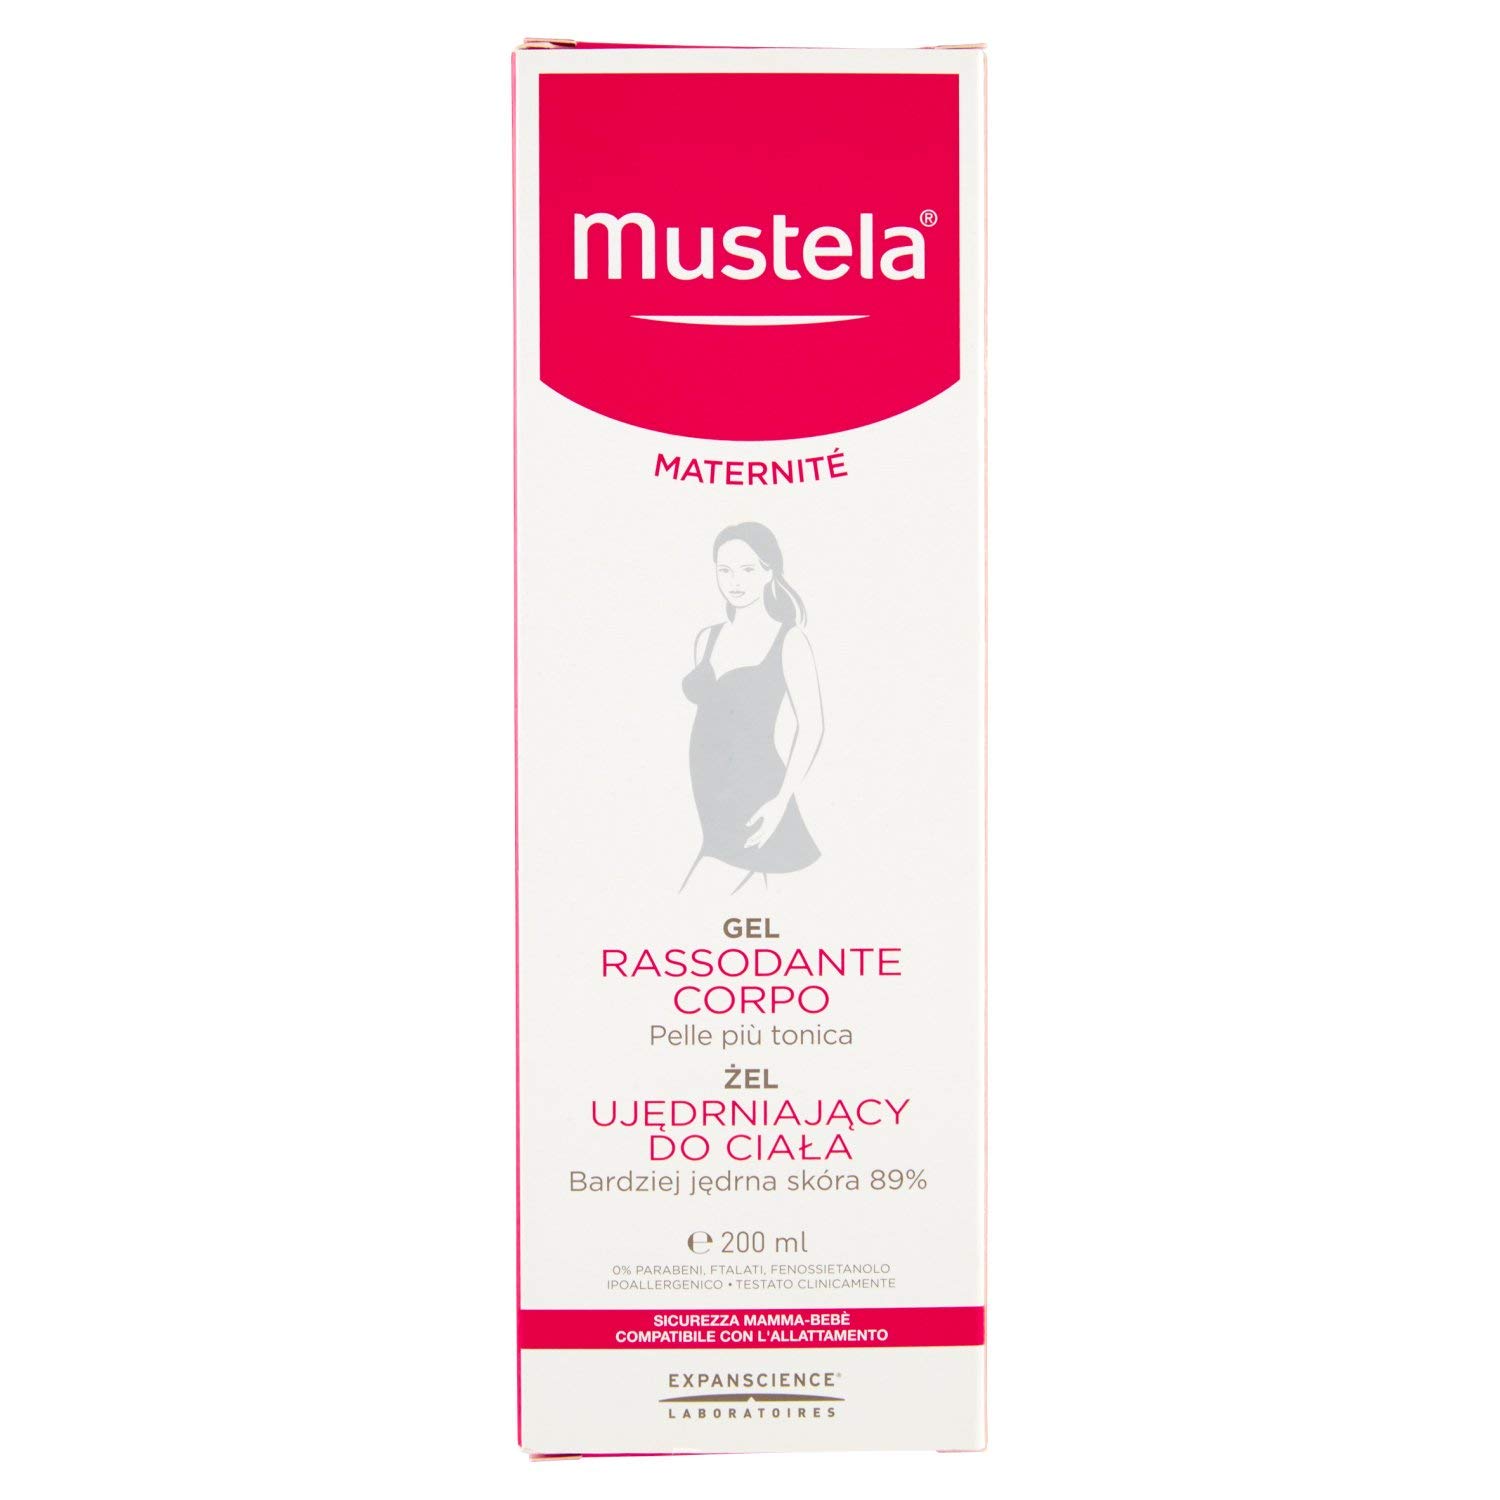 Mustela Maternite Body Gel 200 ml Pack of 1 x 200 g